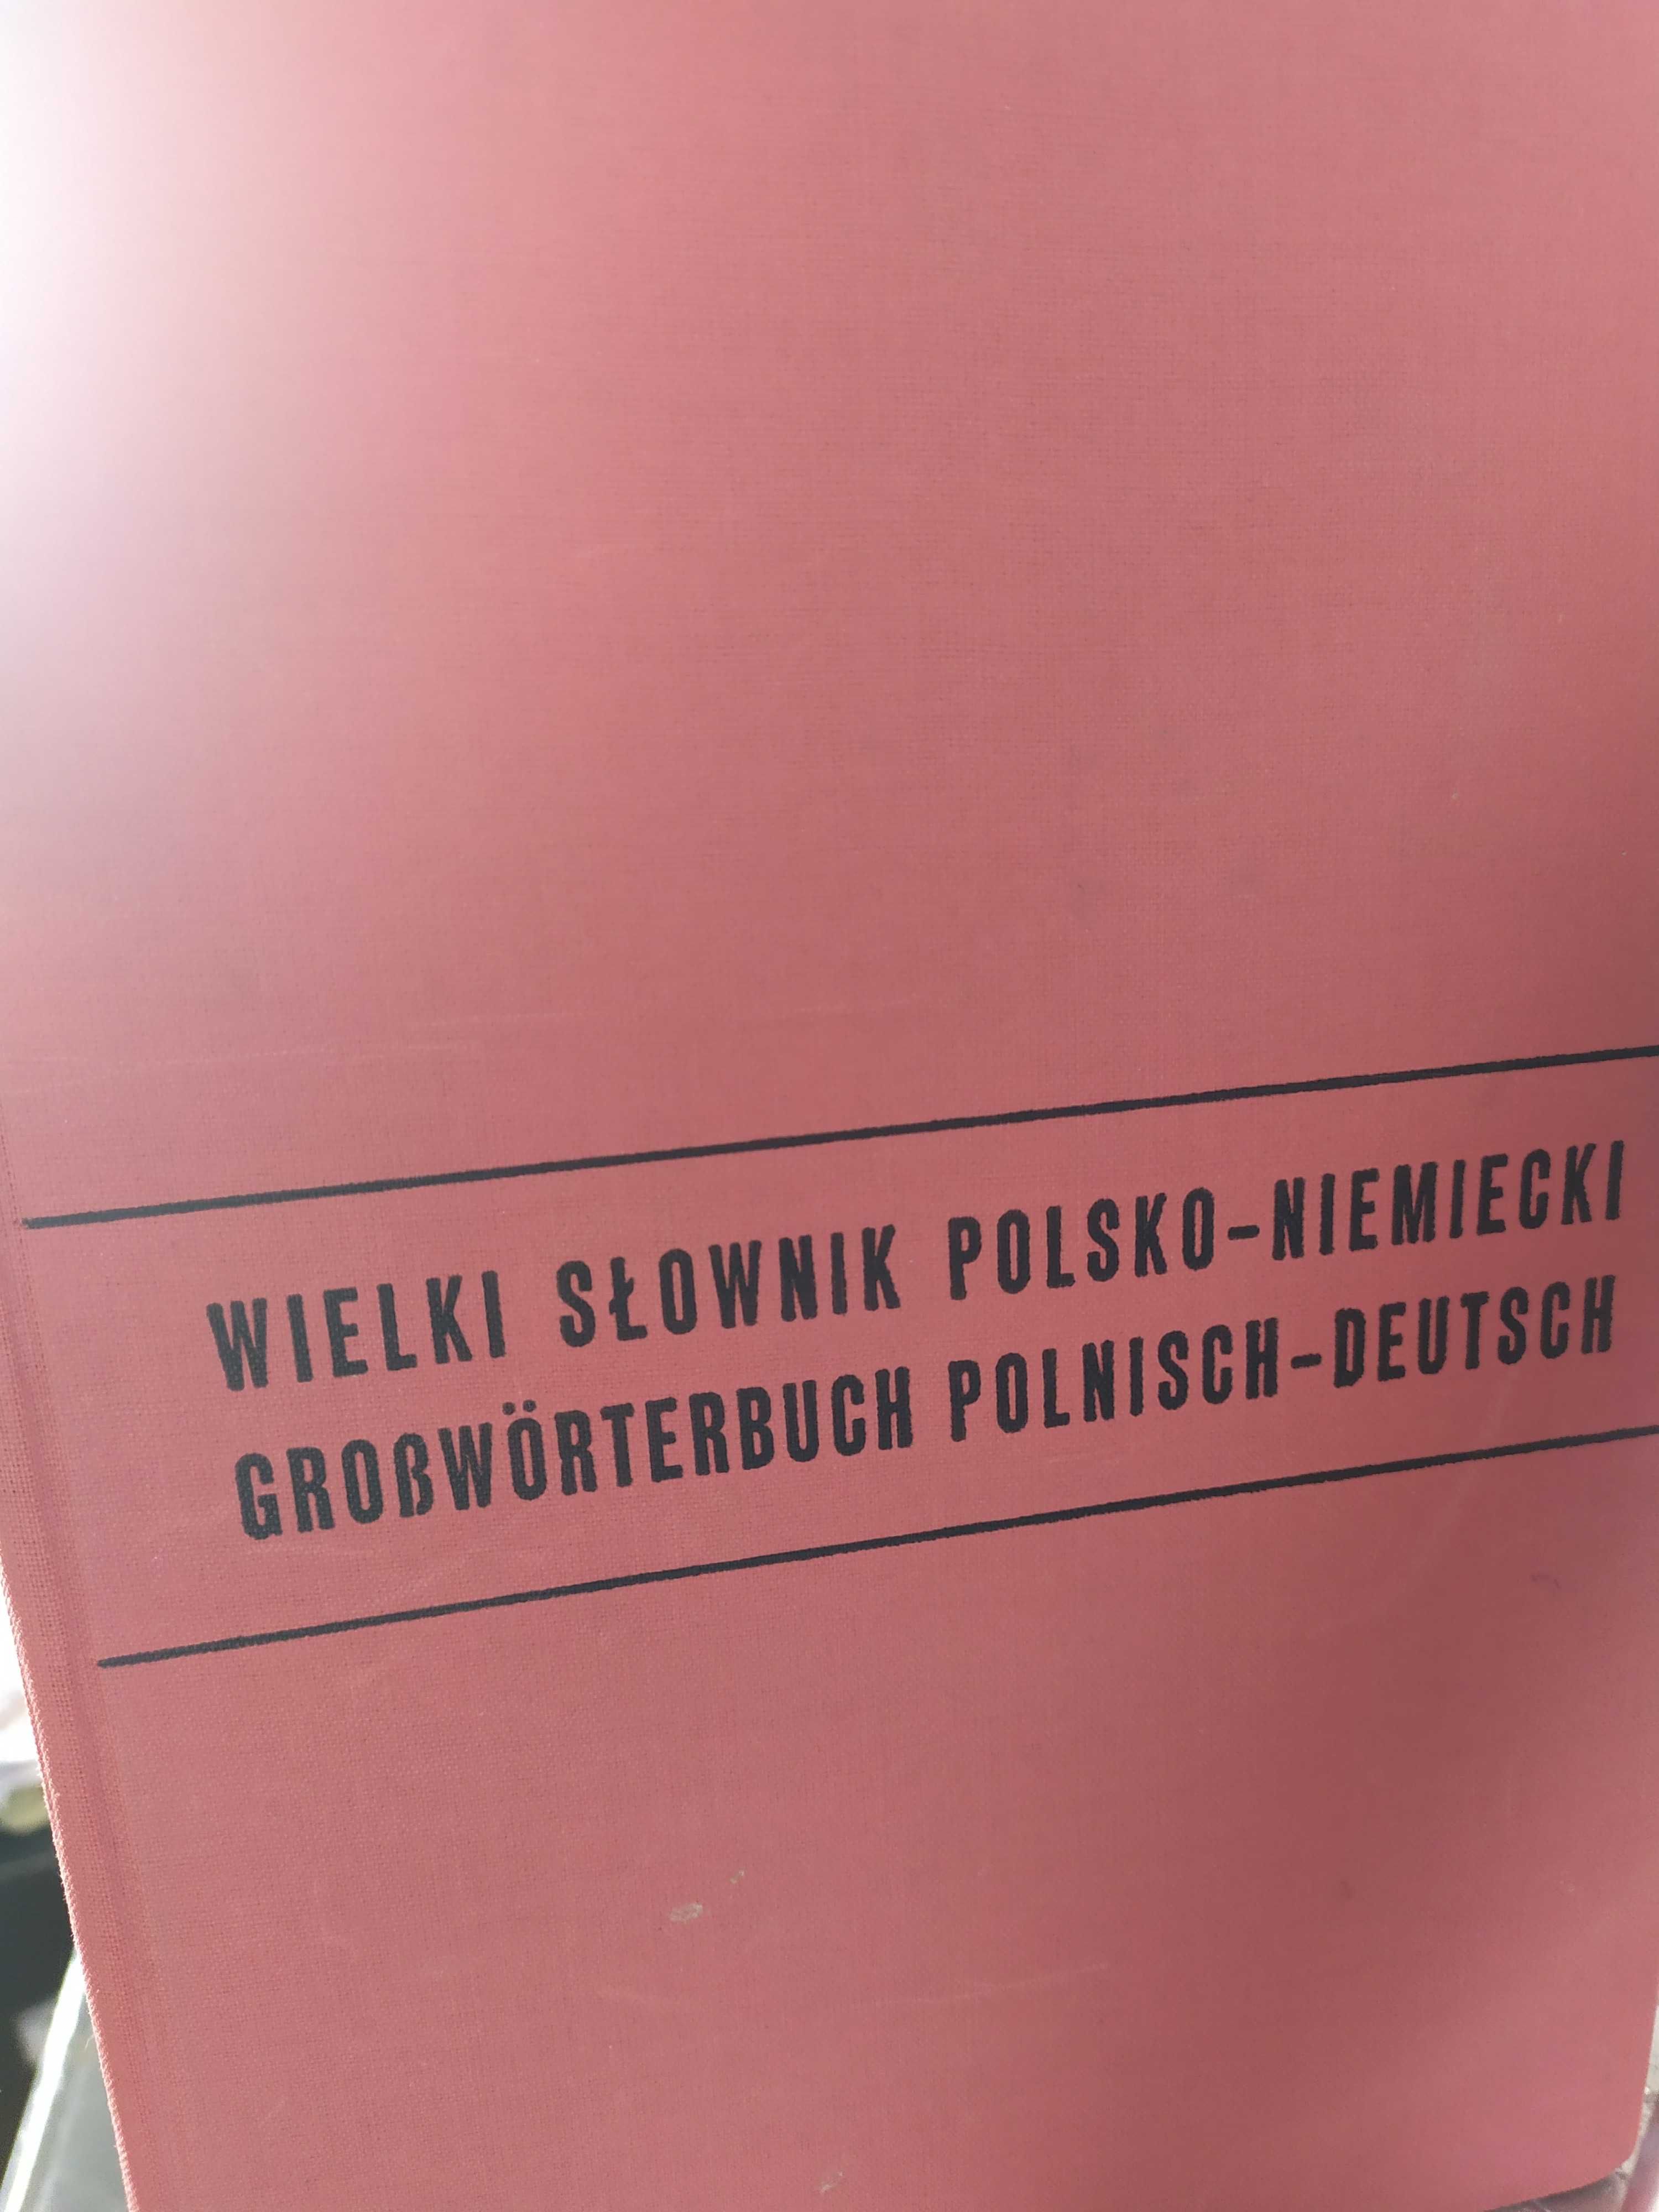 Słownik polsko niemiecki niemiecko-polski.